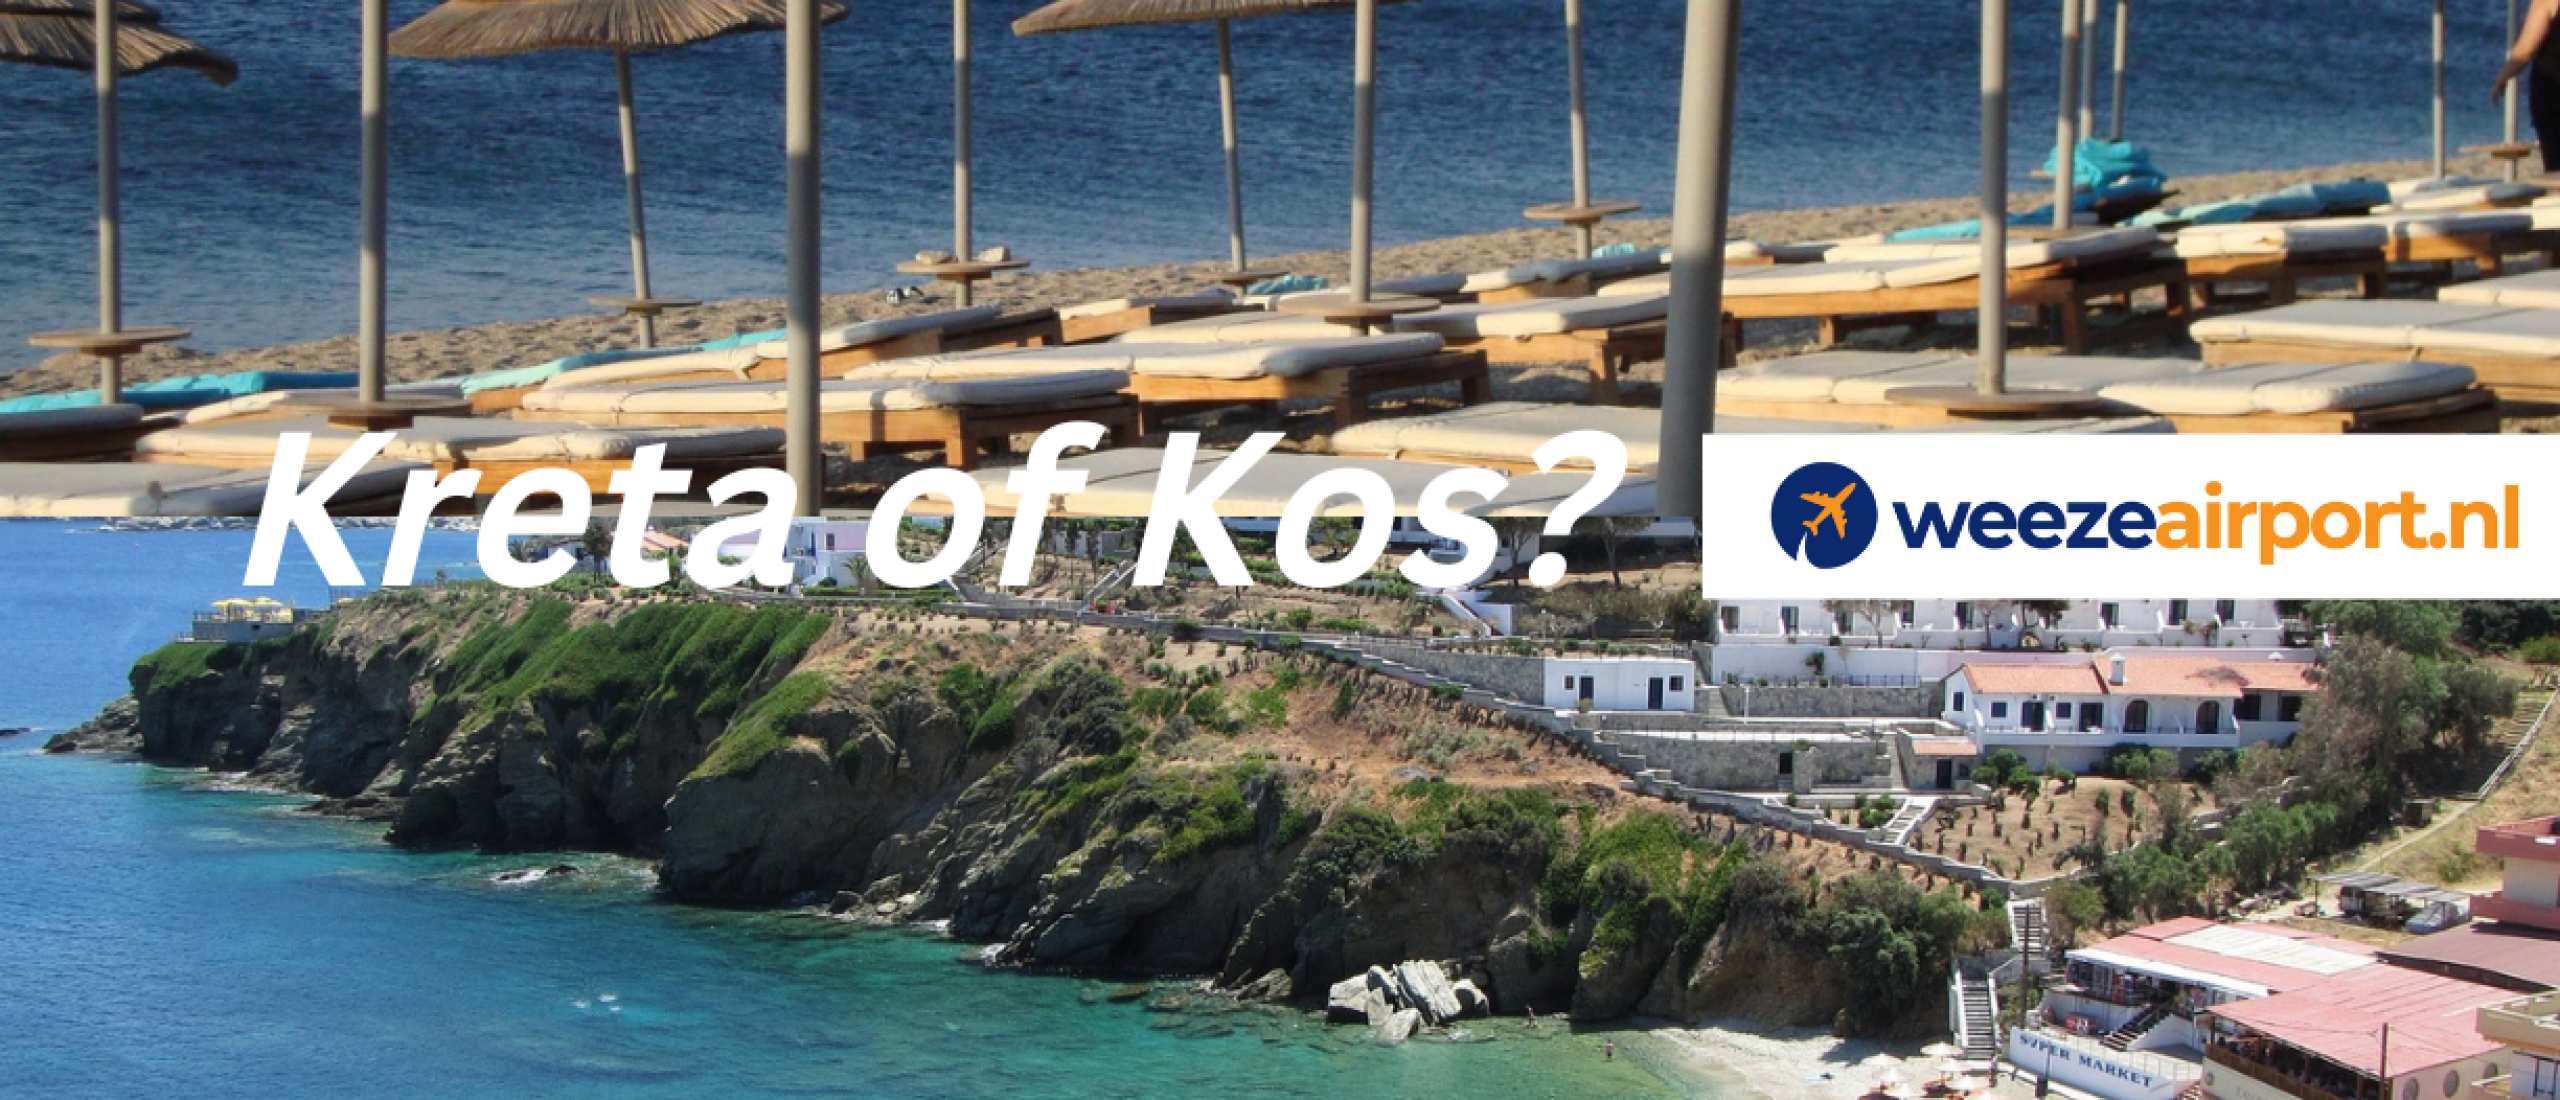 Vakantie naar Kreta of Kos? Welk eiland past bij jou en wat zijn de grootste verschillen? – WeezeAirport.nl